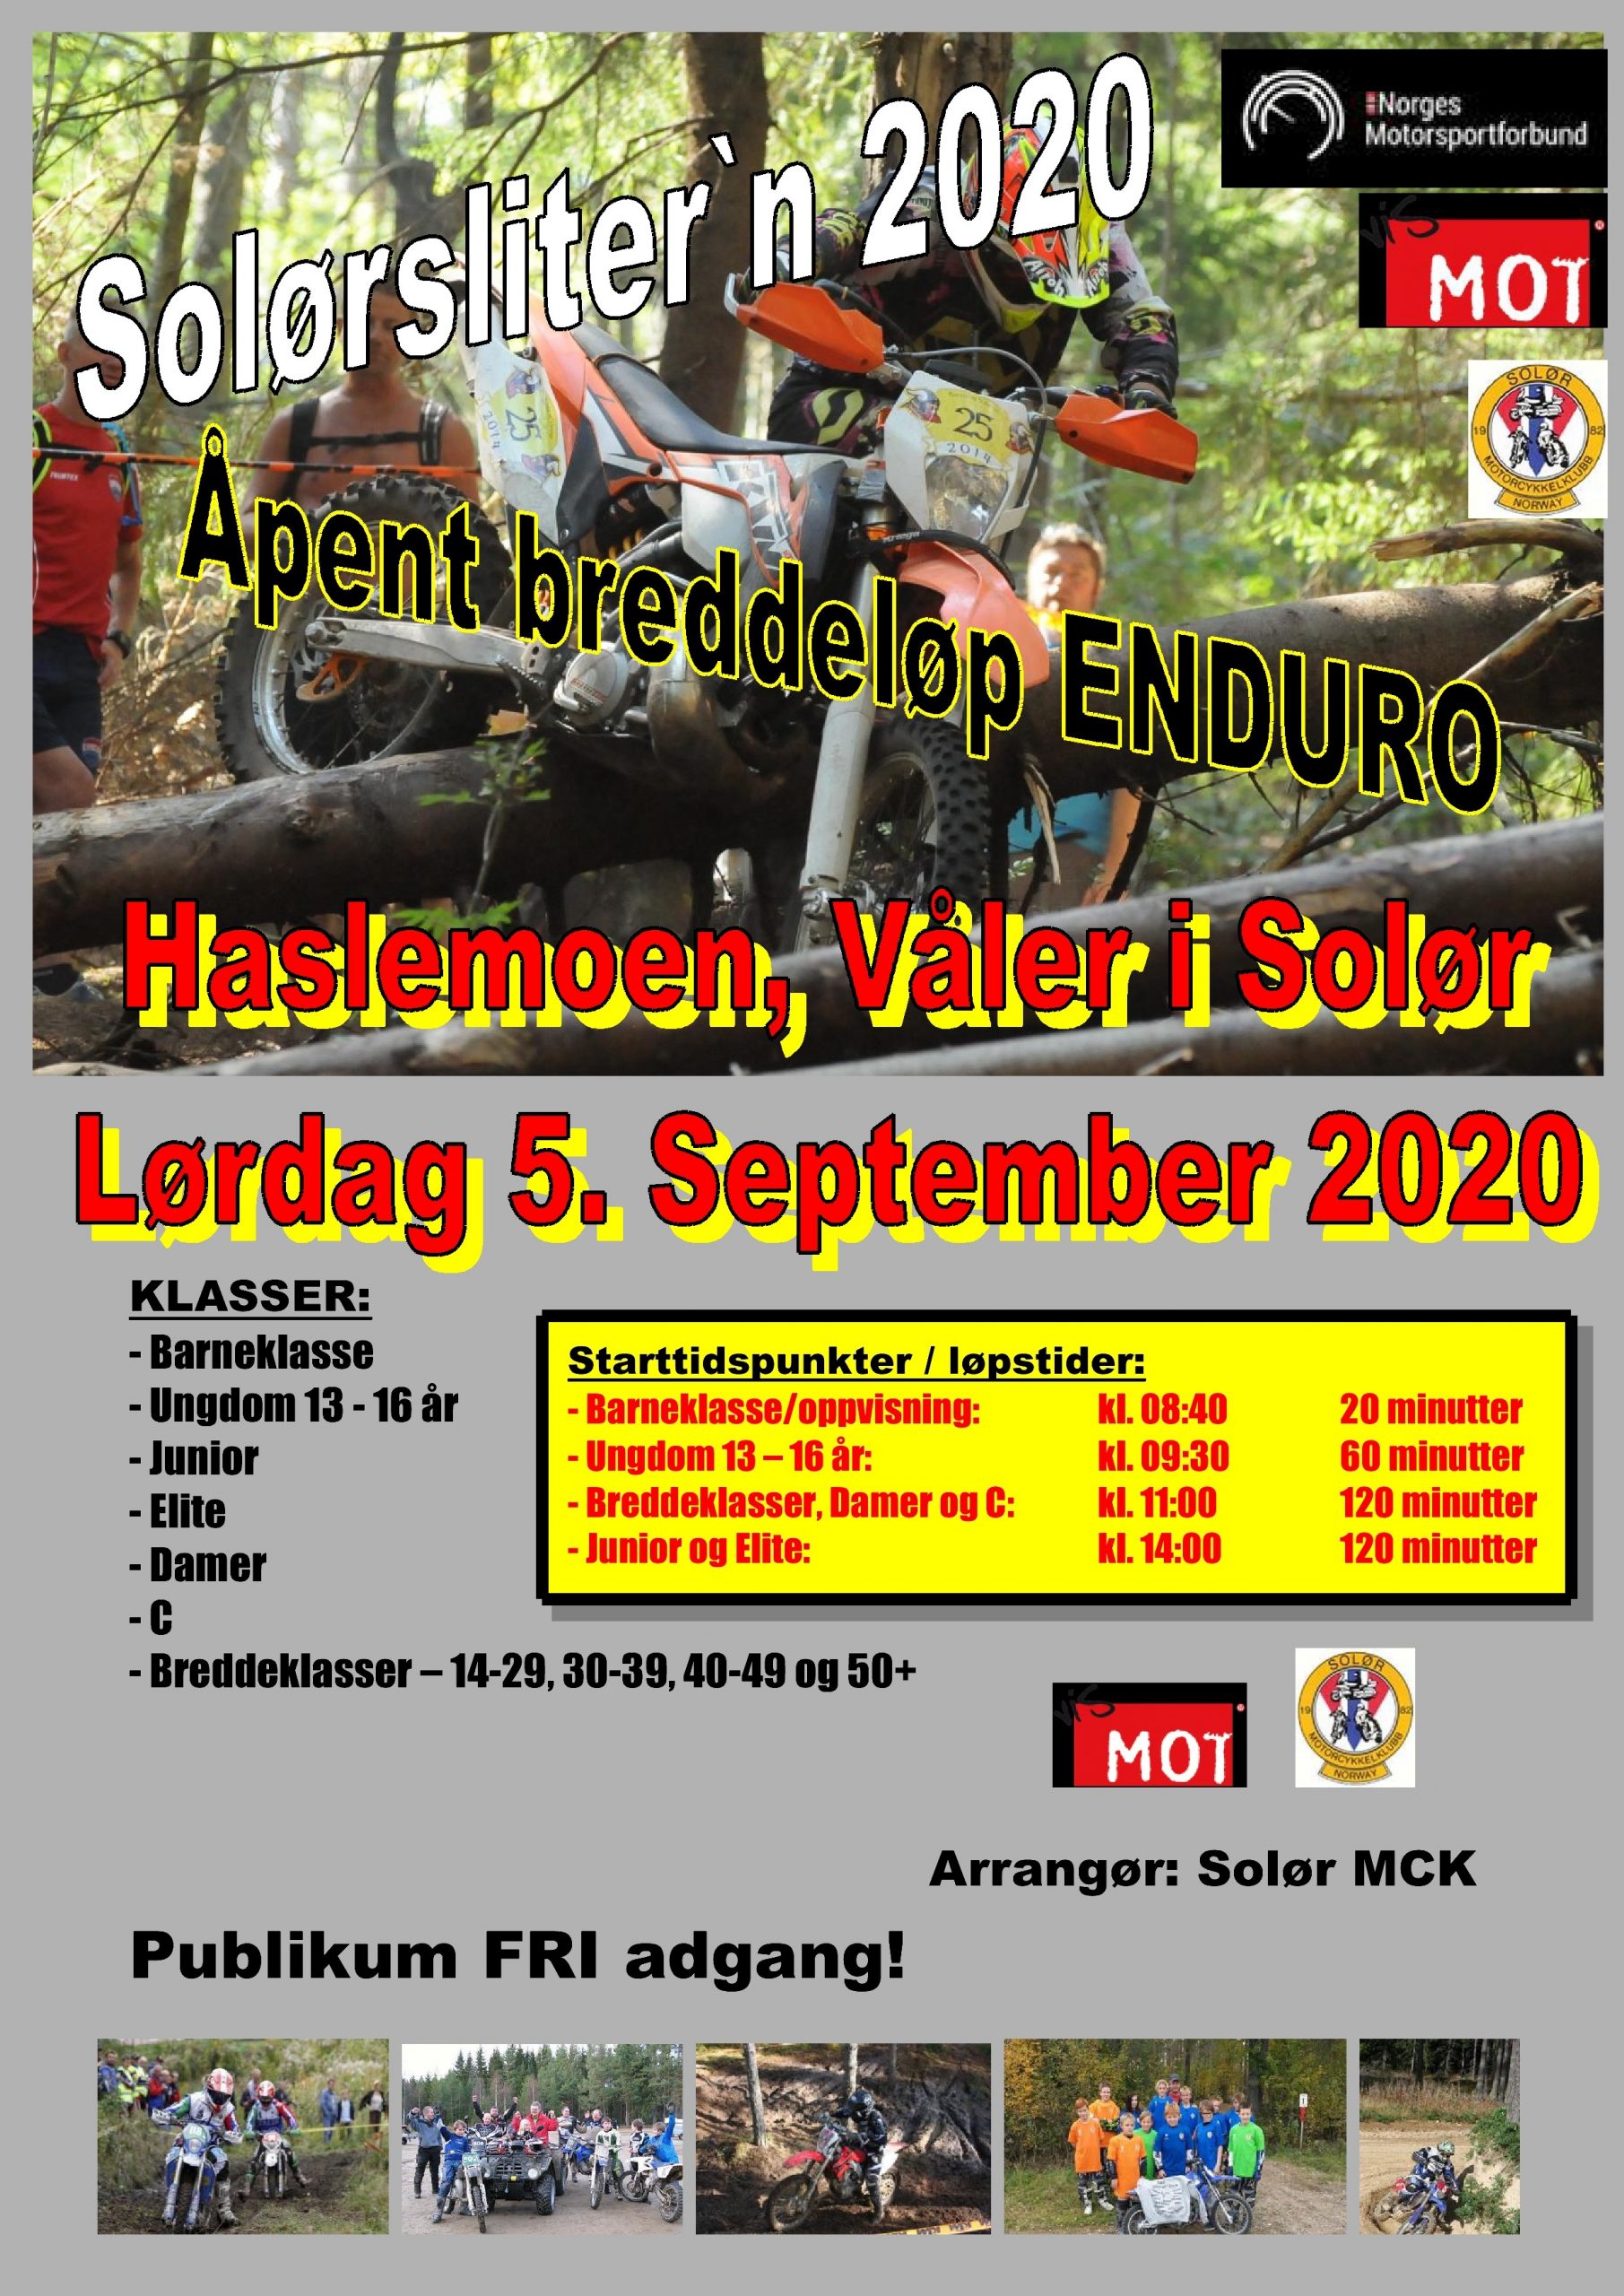 Poster Solørslitern 2020 - lørdag 5. september